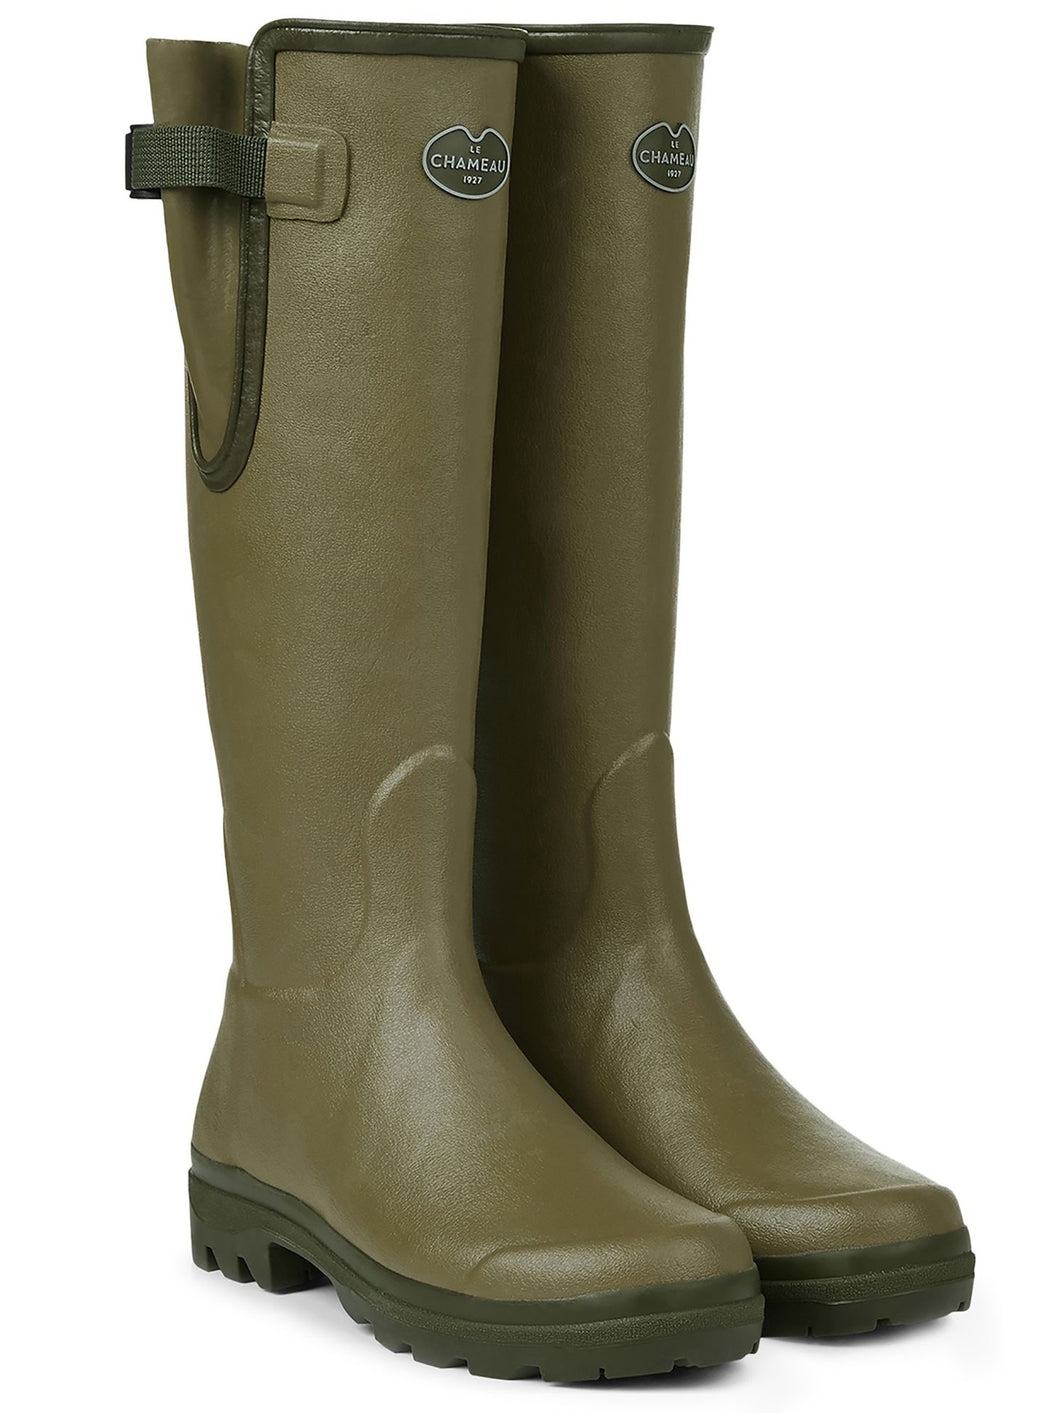 LE CHAMEAU Vierzon Boots - Ladies Jersey Lined - Vert Vierzon